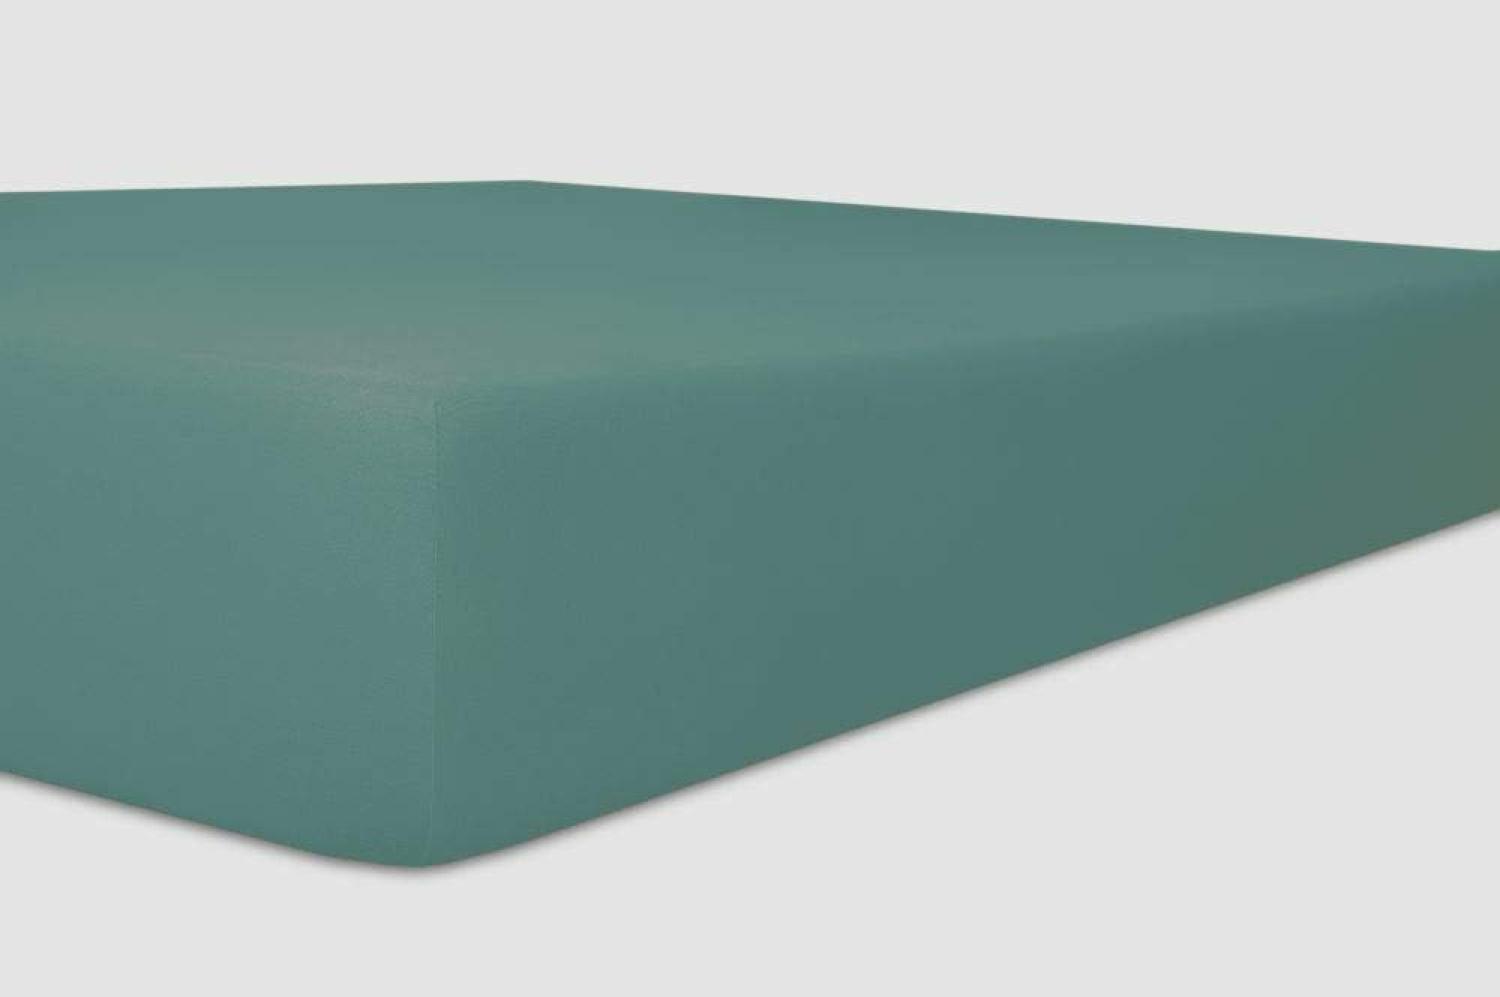 Kneer Vario-Stretch Spannbetttuch one für Topper 4-12 cm Höhe Qualität 22 Farbe salbei 180x200 cm Bild 1